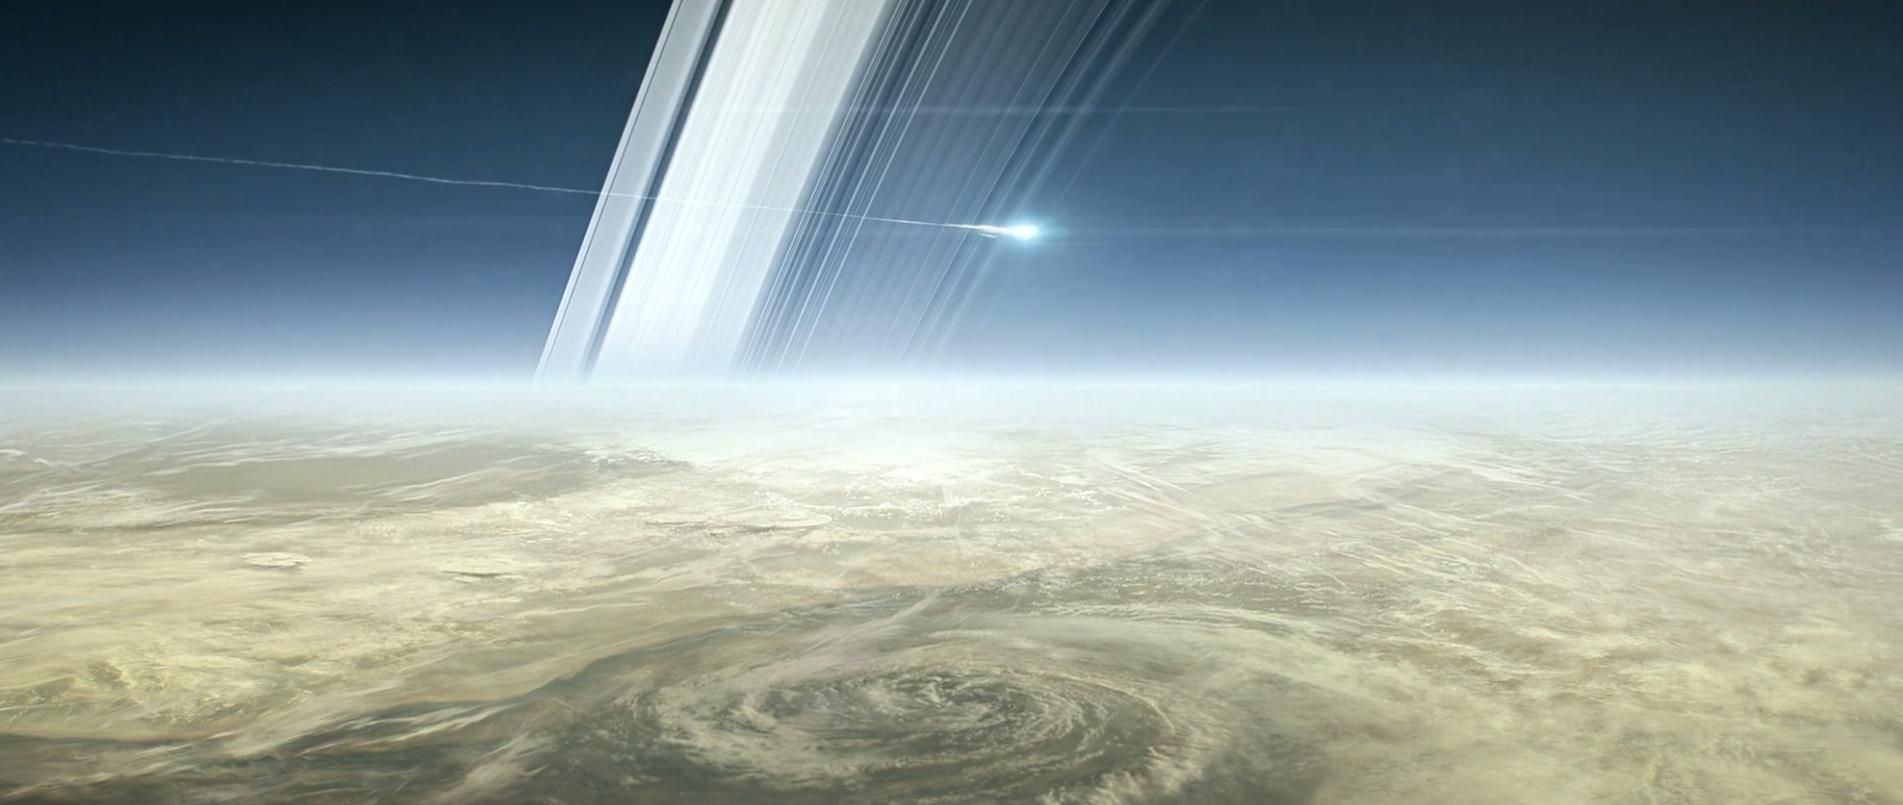 NASA опубликовало впечатляющие кадры с космической миссии на Сатурне: видео